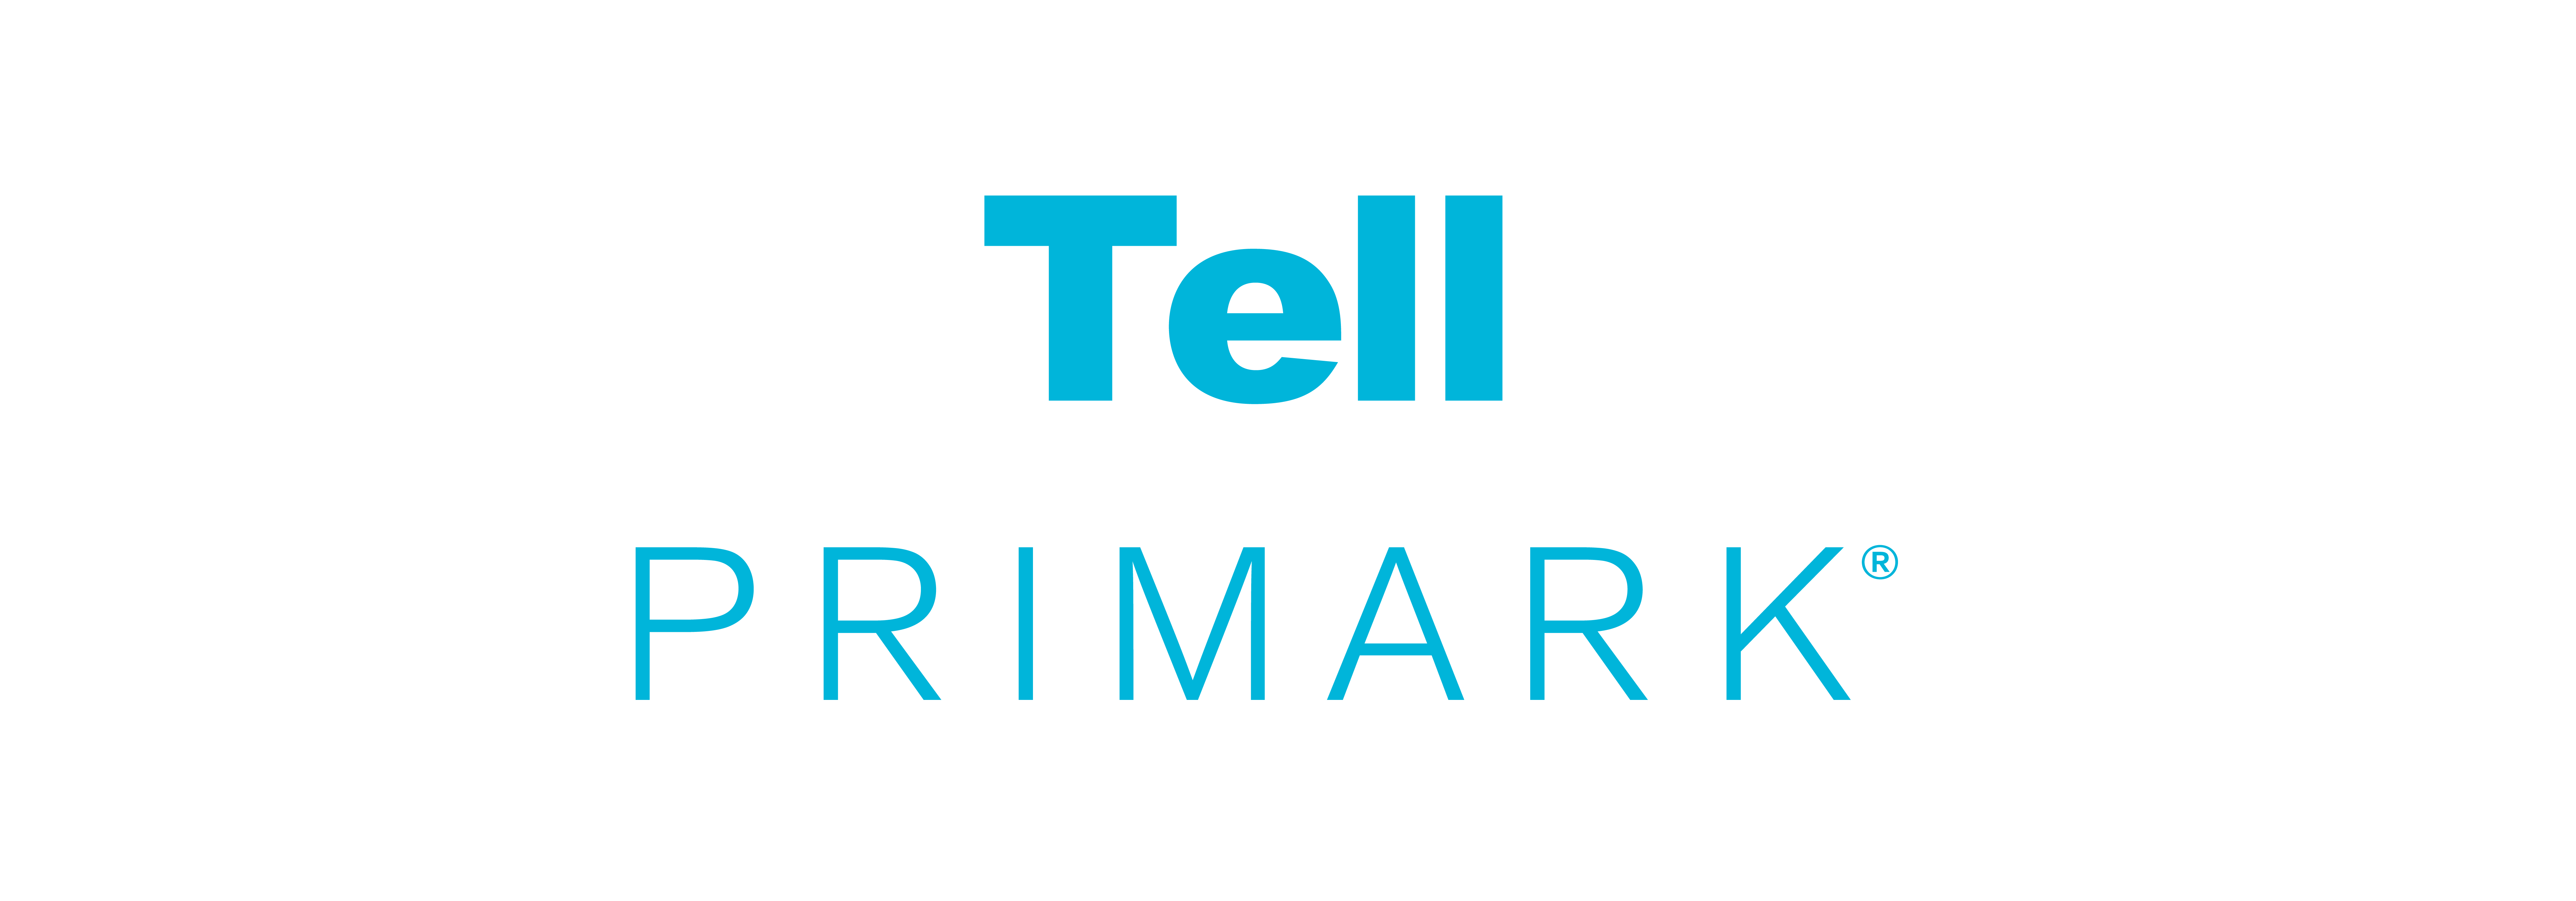 Tell Primark-logo